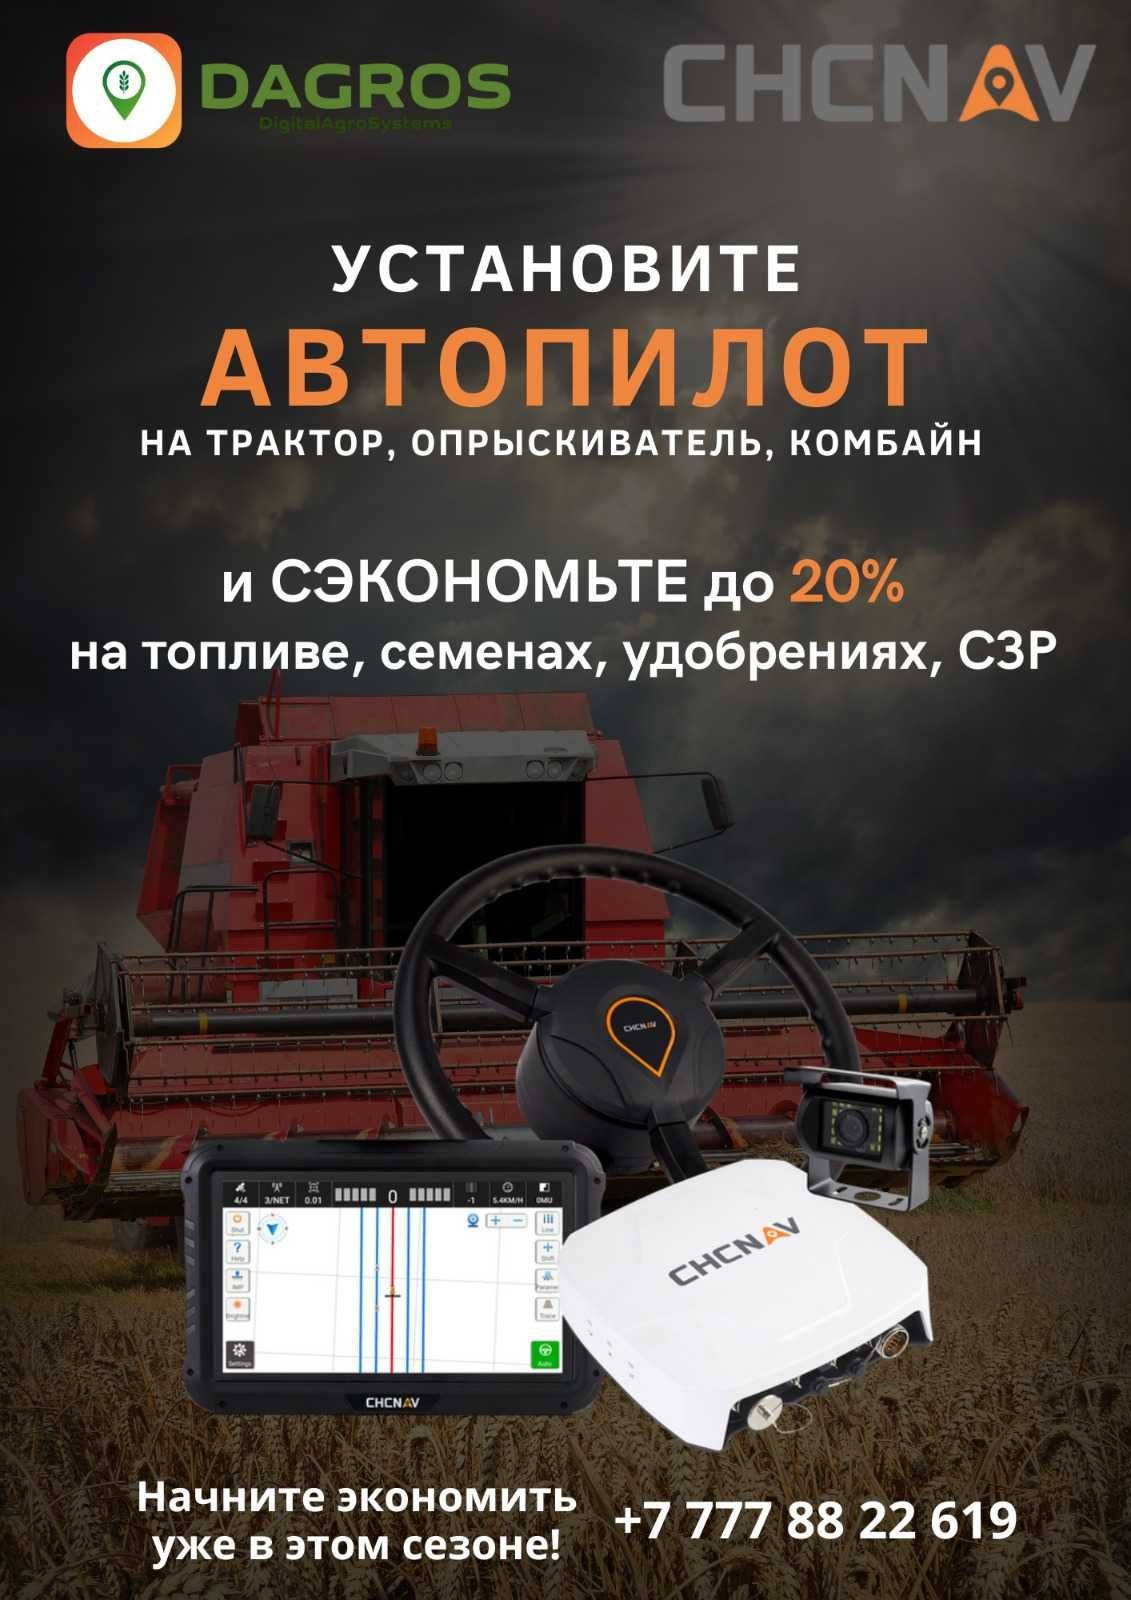 Навигация для тракторов и комбайнов CHCNAV